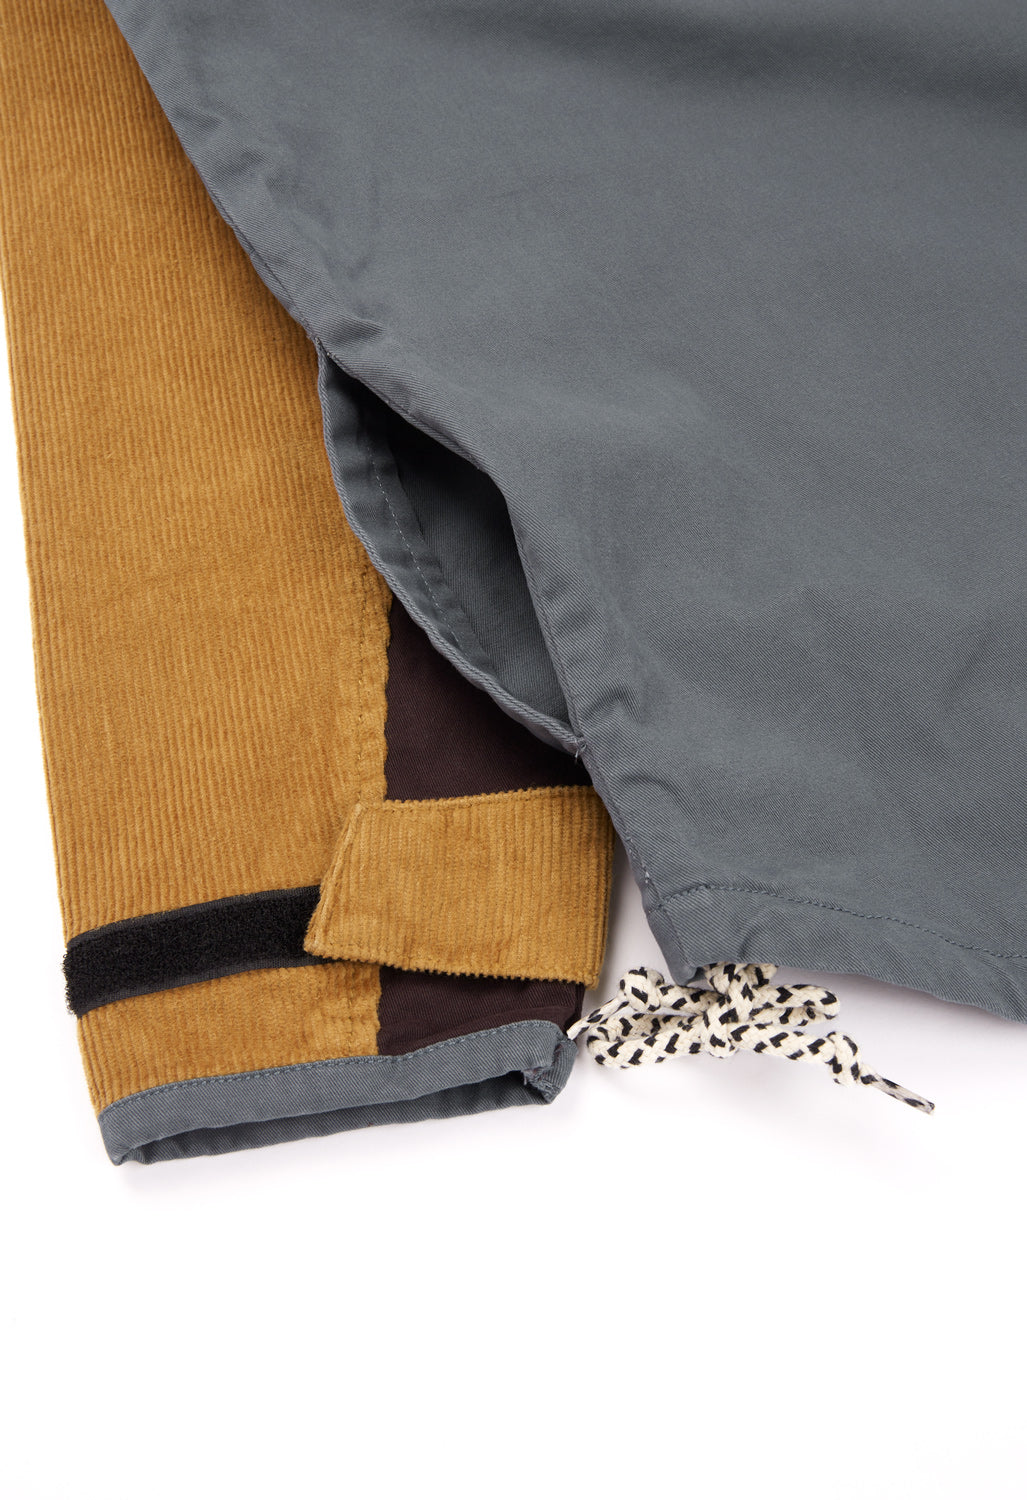 KAVU Men's Throwshirt Flex Half Zip Jacket - Bend Blend